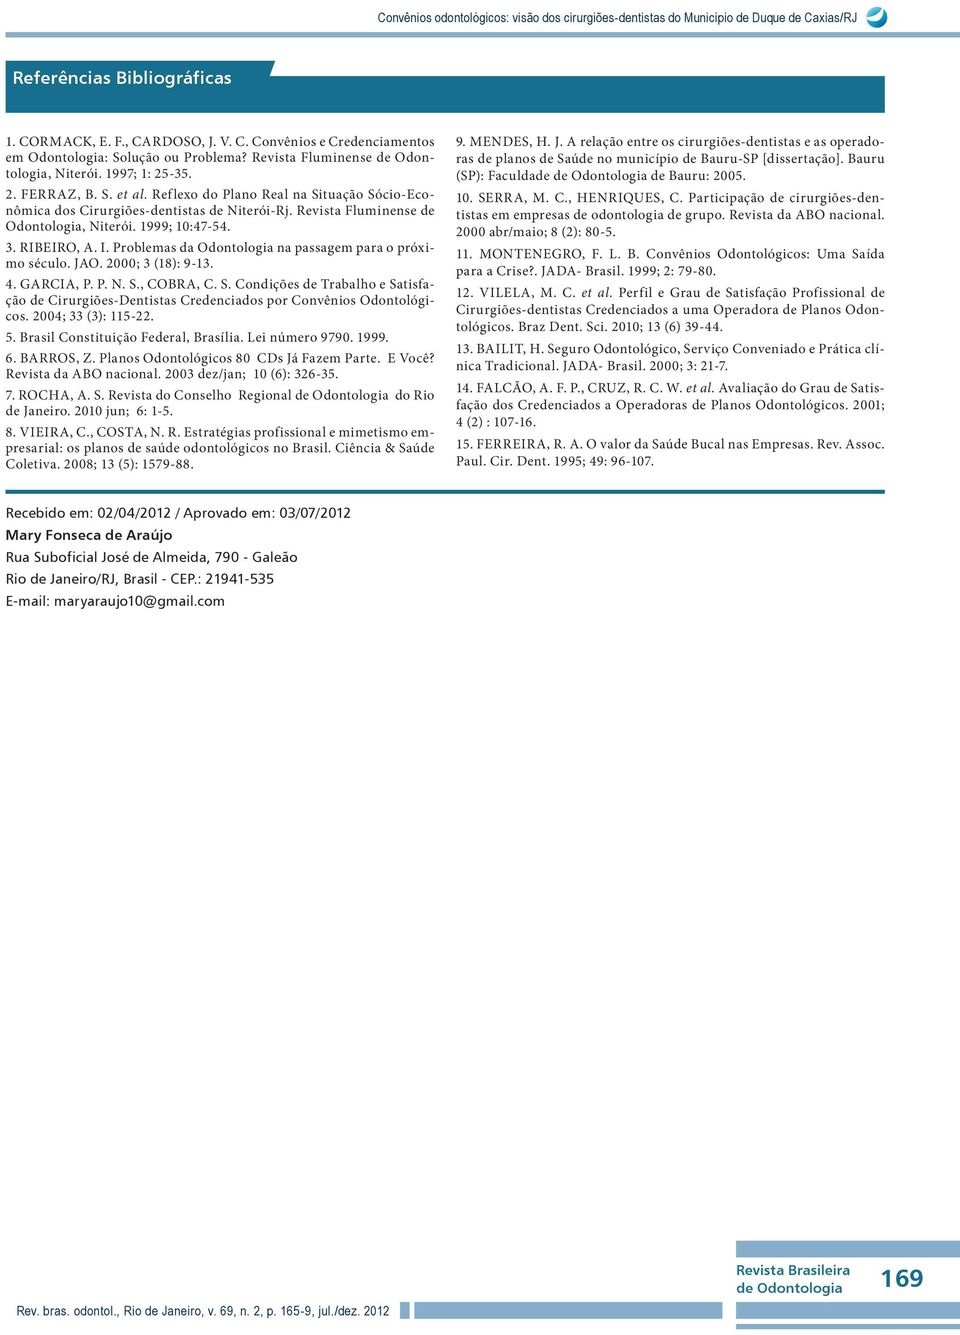 Revista Fluminense de Odontologia, Niterói. 1999; 10:47-54. 3. RIBEIRO, A. I. Problemas da Odontologia na passagem para o próximo século. JAO. 2000; 3 (18): 9-13. 4. GARCIA, P. P. N. S.